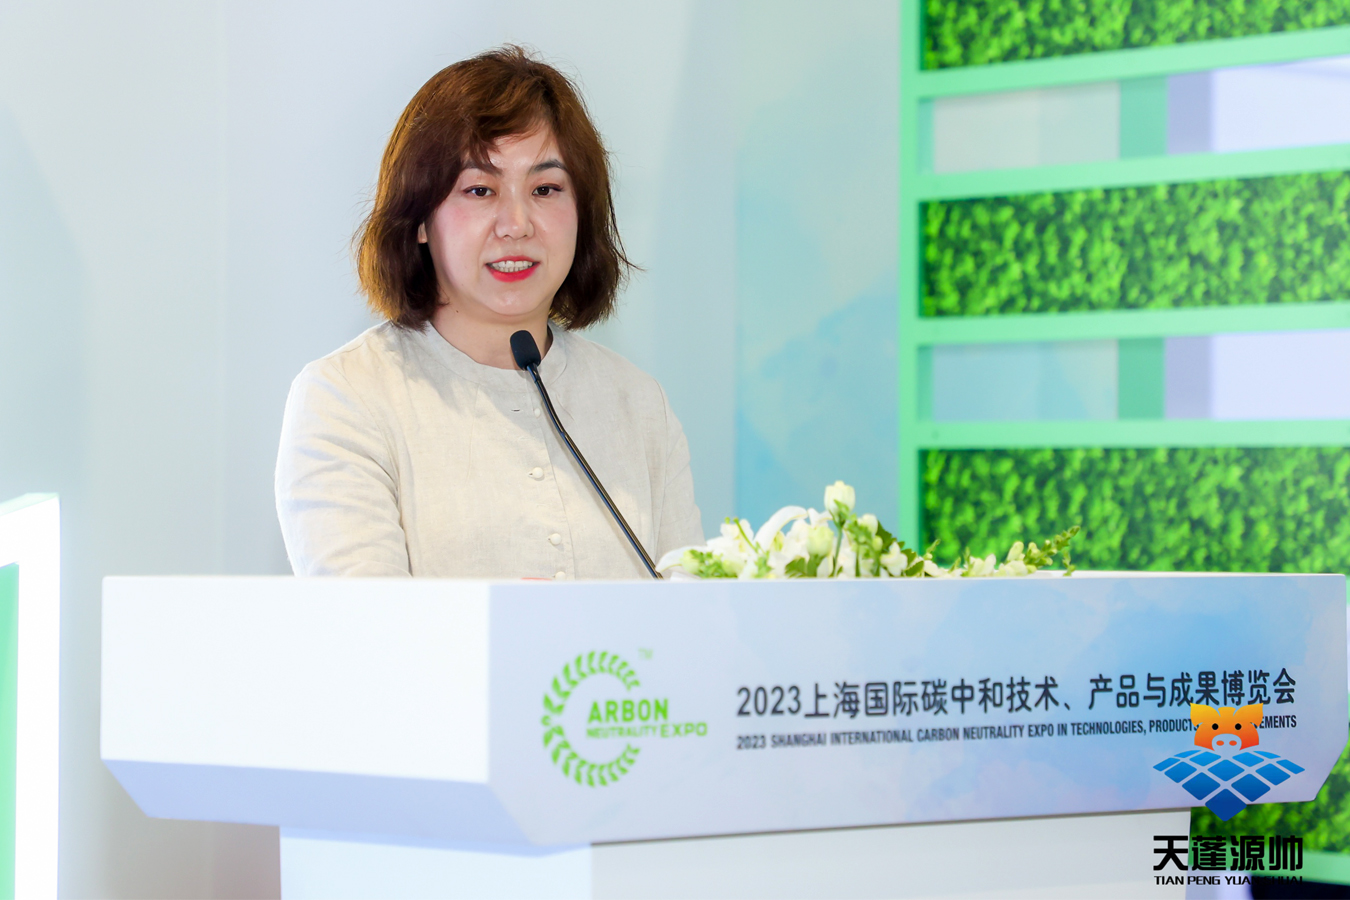 天蓬源帅亮相“上海国际碳博会”并举行全球首发新品发布会